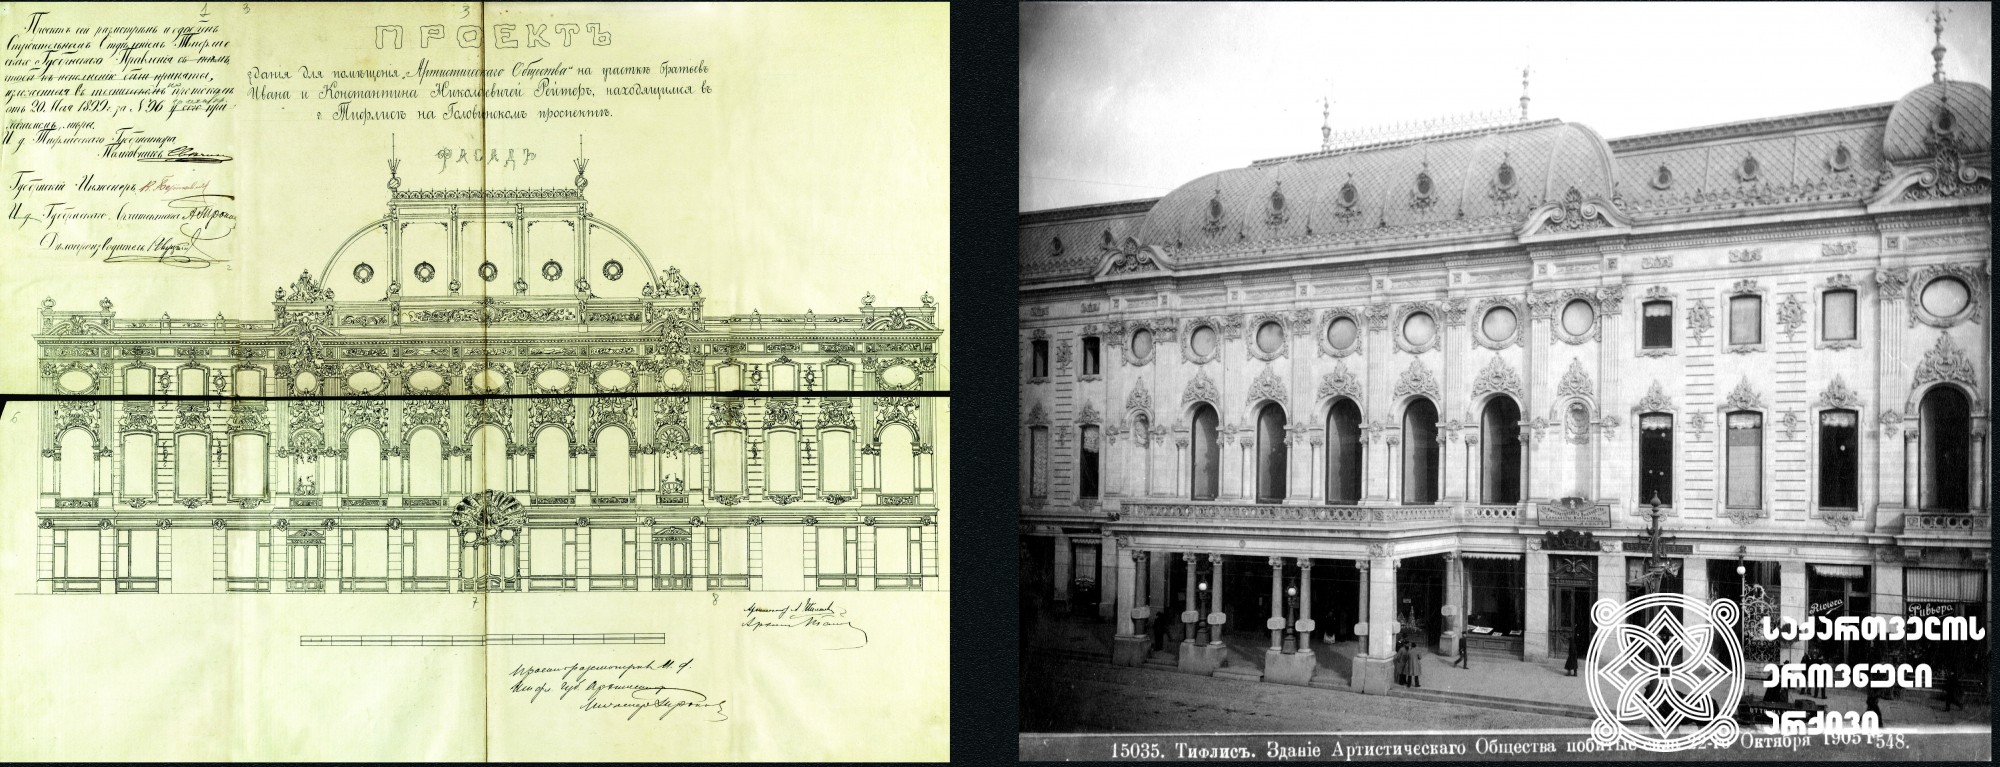 1. რუსთაველის თეატრის ფასადის პროექტი. არქიტექტორი ალექსანდრე შიმკევიჩი. 1899 წელი. <br>
Project of the facade of Rusaveli Theatre. 1899. <br>
2. შოთა რუსთაველის სახელობის აკადემიური თეატრი. დიმიტრი ერმაკოვის ფოტოკოლექცია. 1890-1910 წლები.
შოთა რუსთაველის სახელობის აკადემიური თეატრი 1898-1901 წლებში თბილისში მოღვაწე არქიტექტორების - კორნელი ტატიშჩევისა და ალექსანდრ შიმკევიჩის მიერ აიგო. <br>
Shota Rustaveli Academic Theatre. Photo collection of Dimitri Ermakov. 1890-1910. 
The Theatre was built by Korneli Tatishchev and Alexander Shimkevich, the architects acting in Georgia in 1898-1901. <br>
დოკუმენტები დაცულია საქართველოს ეროვნულ არქივში. <br>
Documents are preserved at the National Archives of Georgia.